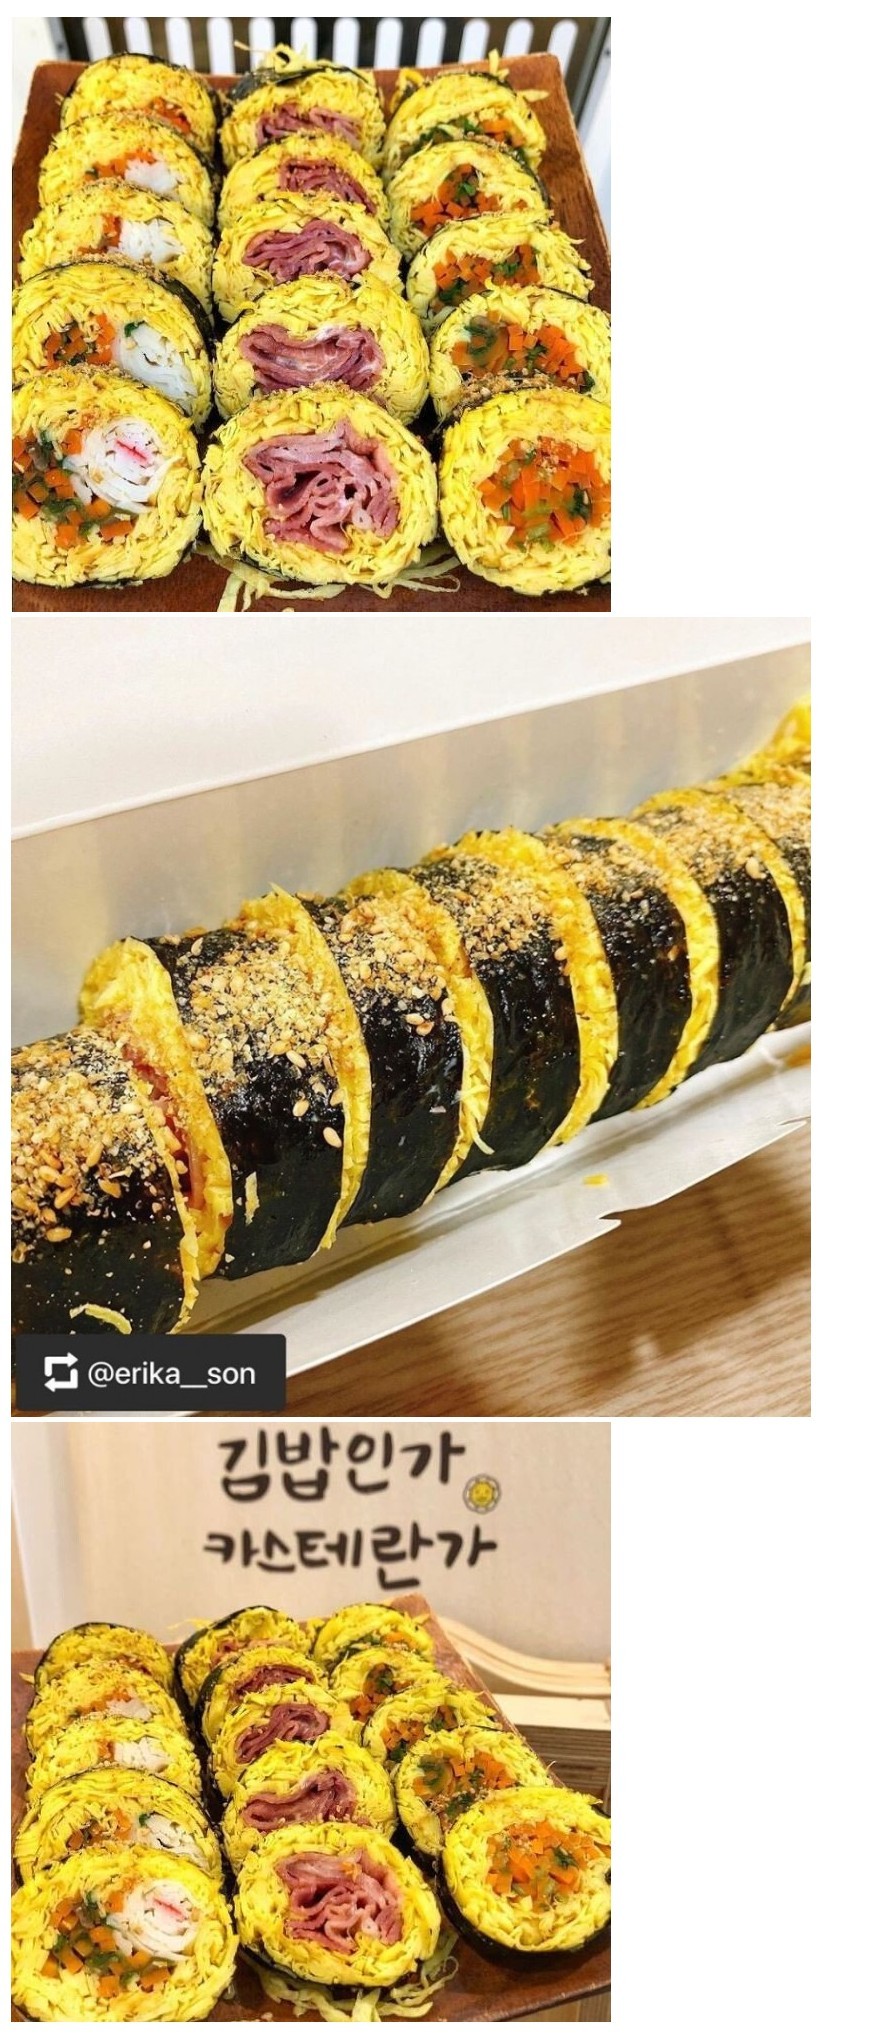  밥 없는 김밥